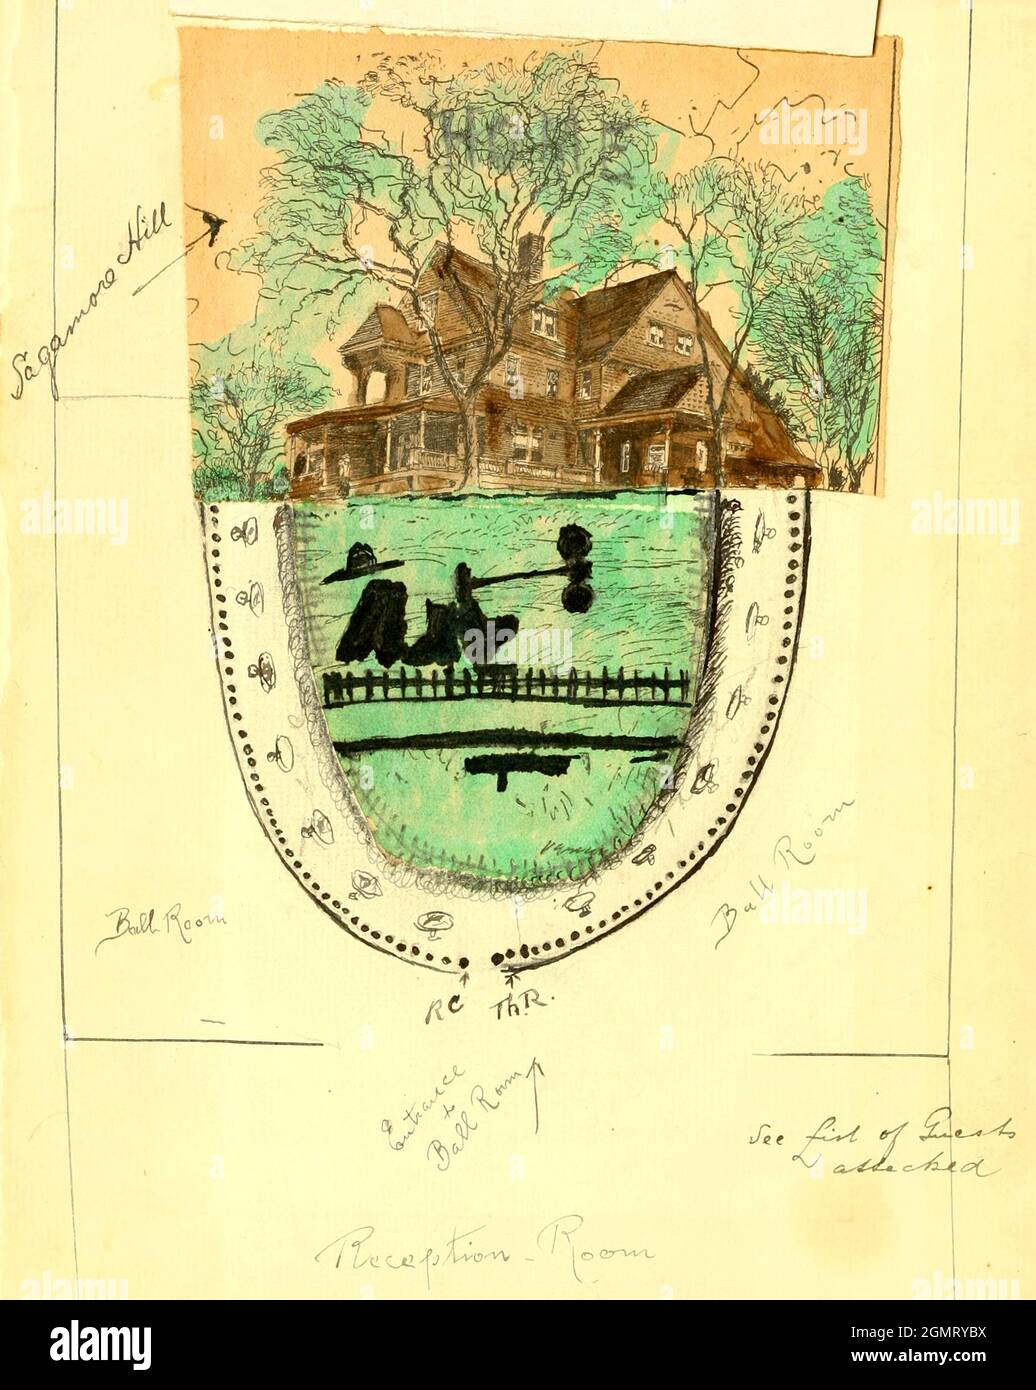 Informations et directions dessinées à la main sur une carte et dessin de la maison de Theodore Roosevelt - Sagamore Hill Banque D'Images